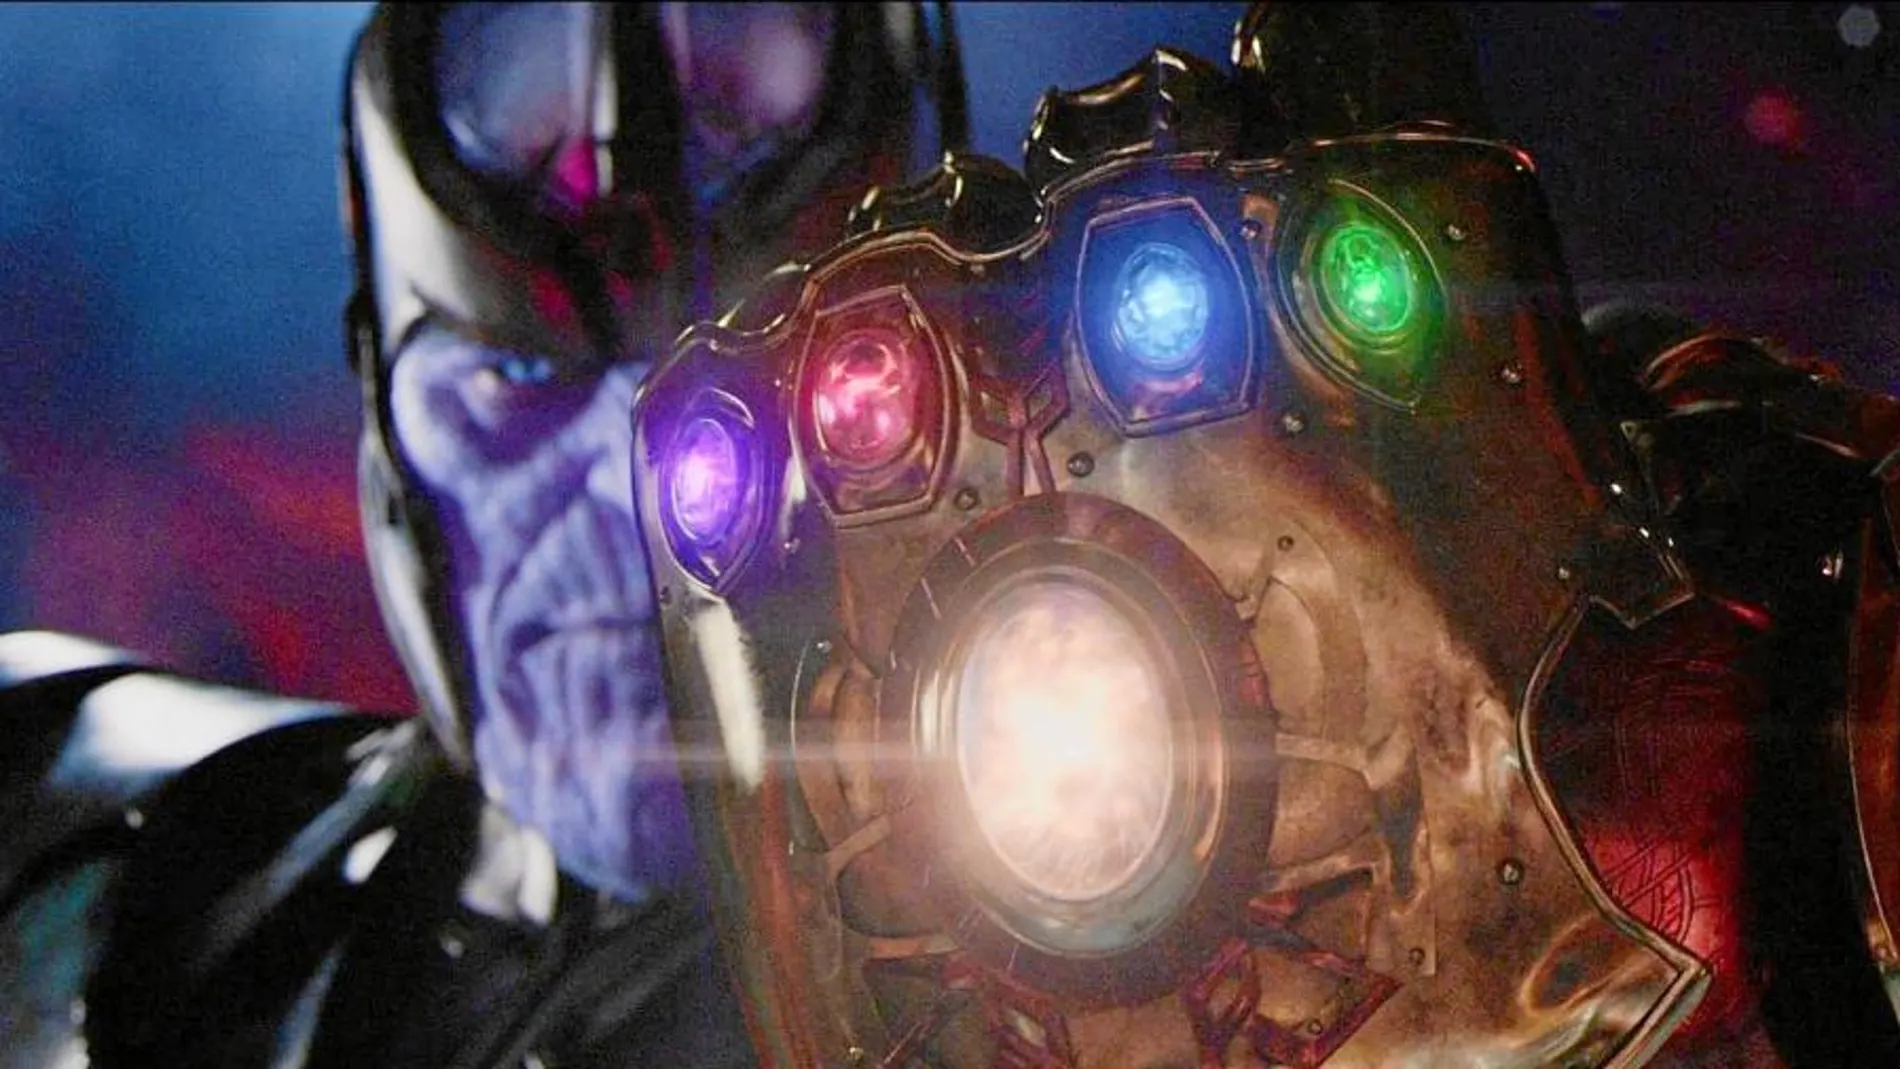 Josh Brolin da vida a Thanos, el malvado del filme que desea hacerse con el poder y dominar así el mundo